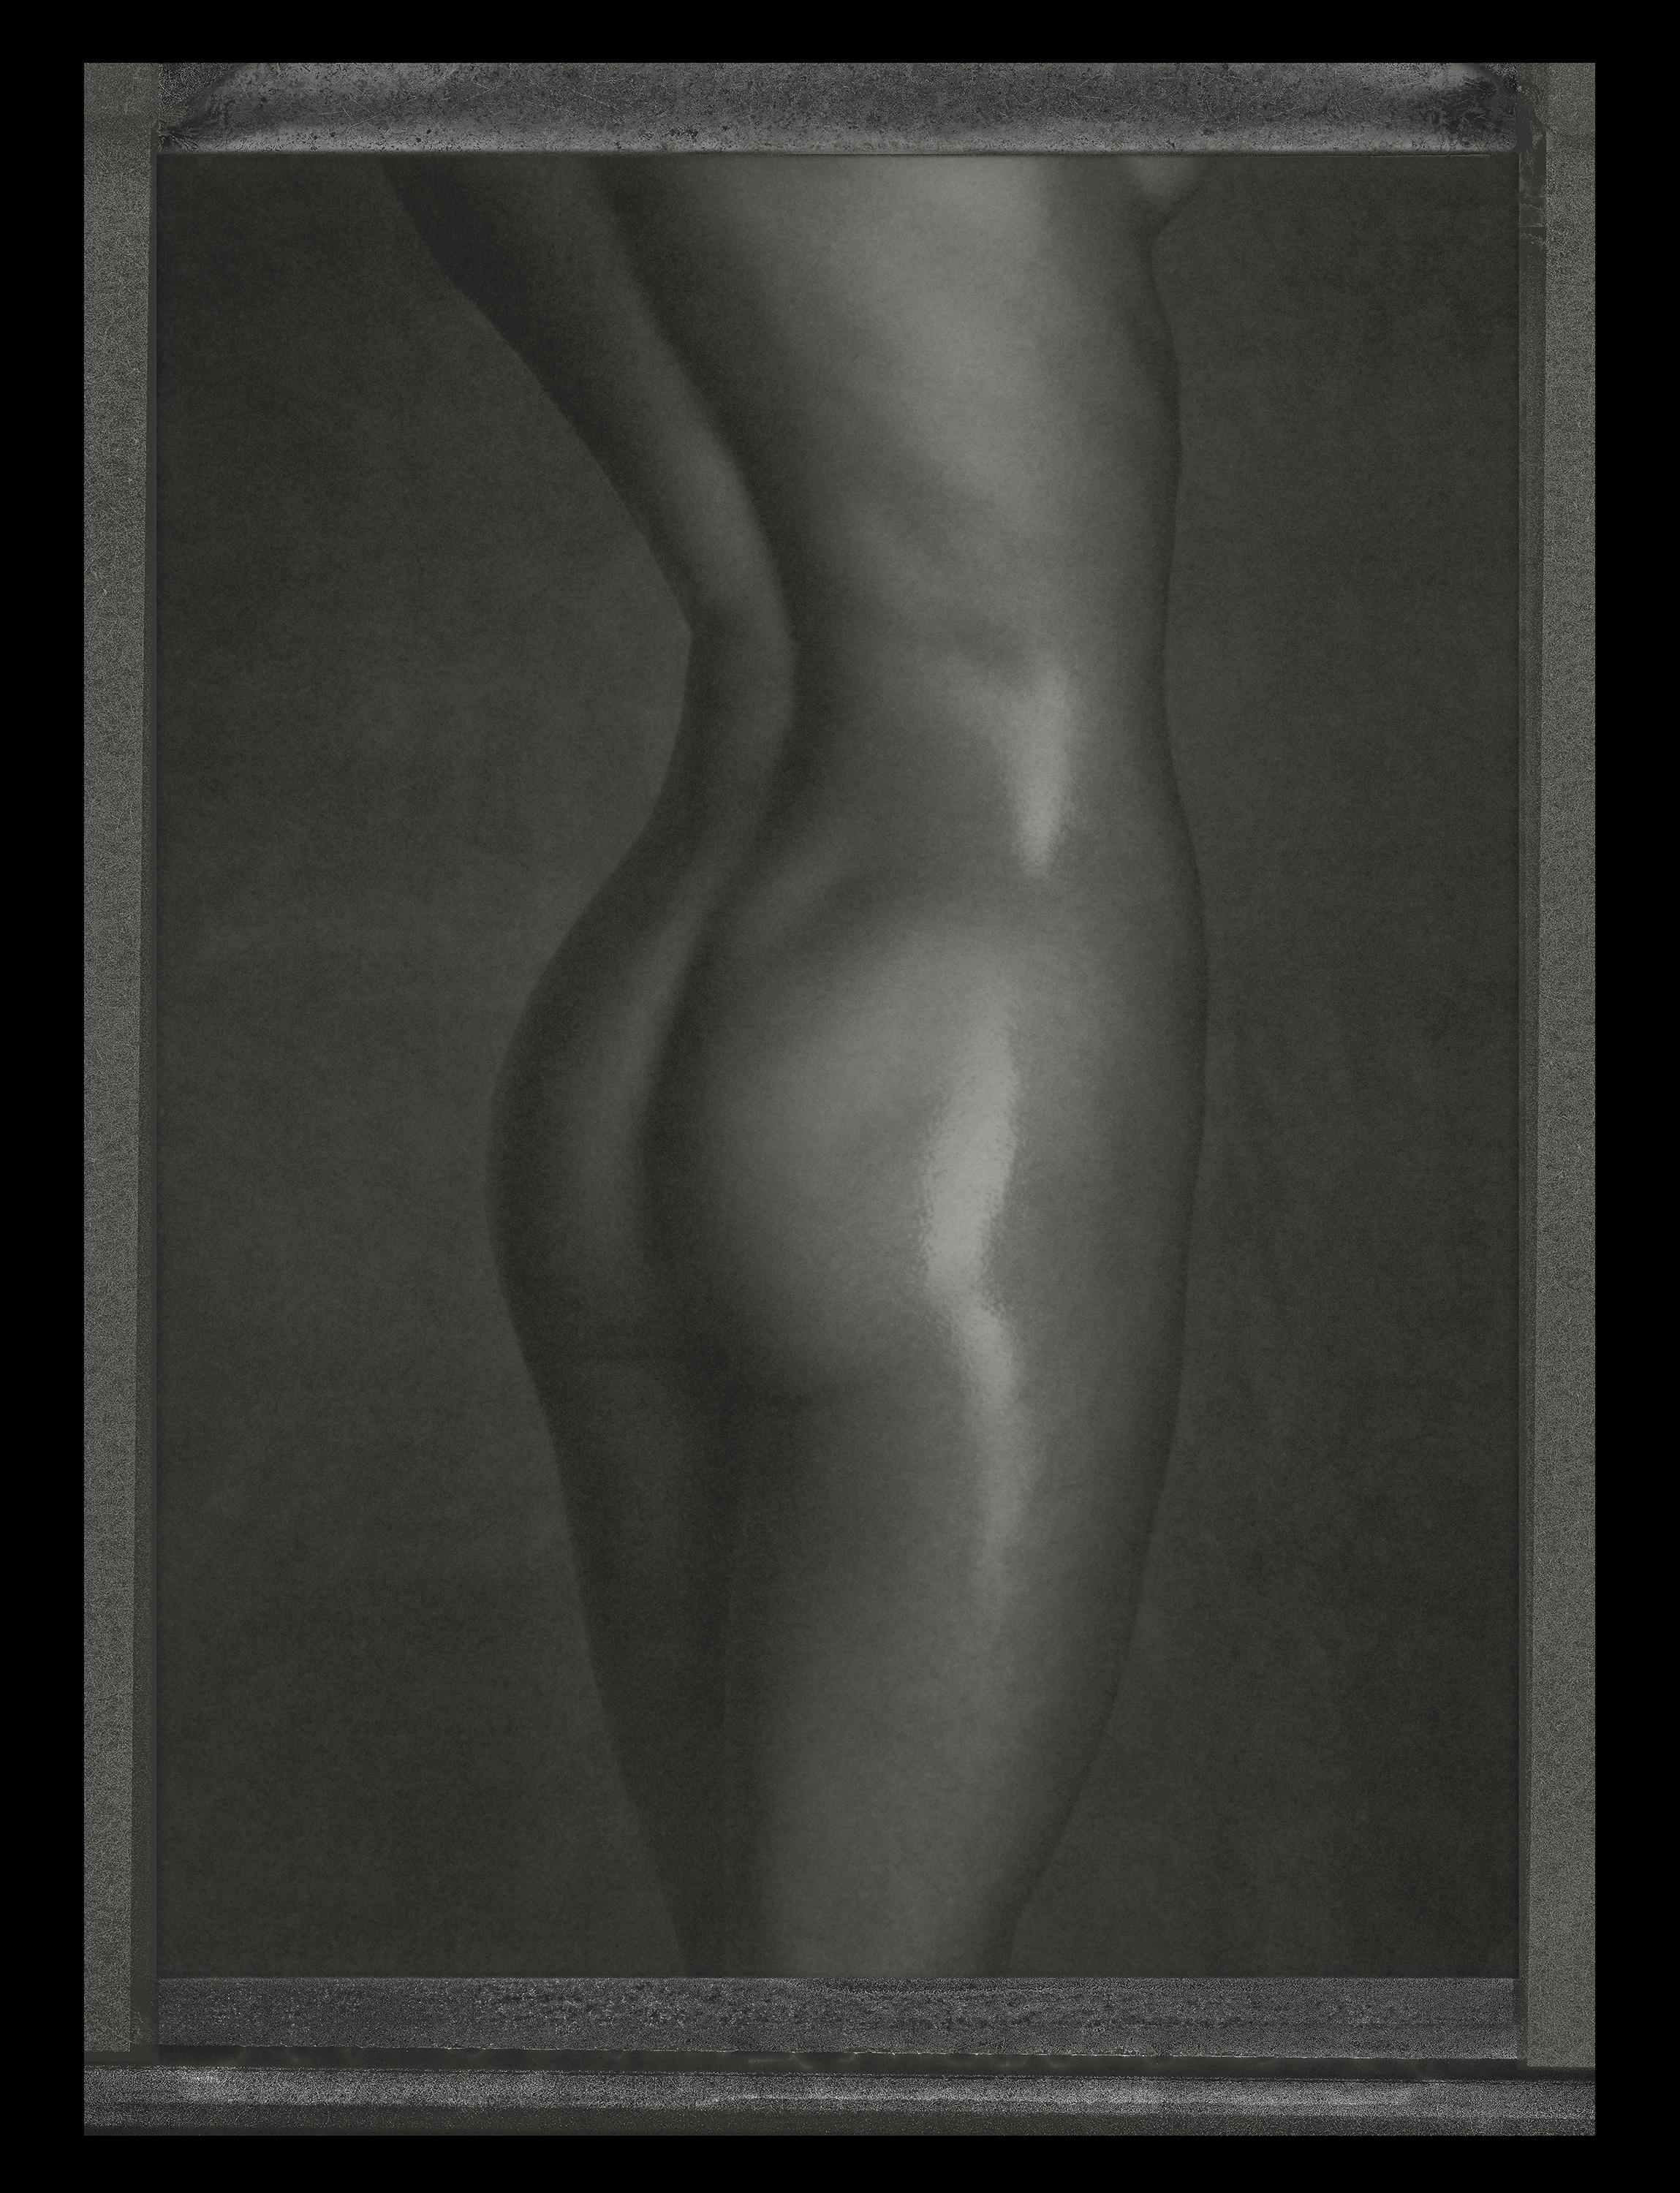 Albert WATSON (*1942, Schottland)
Adriana Lima Nackt, New York City, 1998
Archivpigmentdruck von einem Polaroidnegativ, aufgezogen auf Acryl (Diasec)
141 x 105.5 cm (55 1/2 x 41 1/2 in.)
Auflage von 7; Ed. Nr. 1/7
Gerahmter Druck

Albert Watson